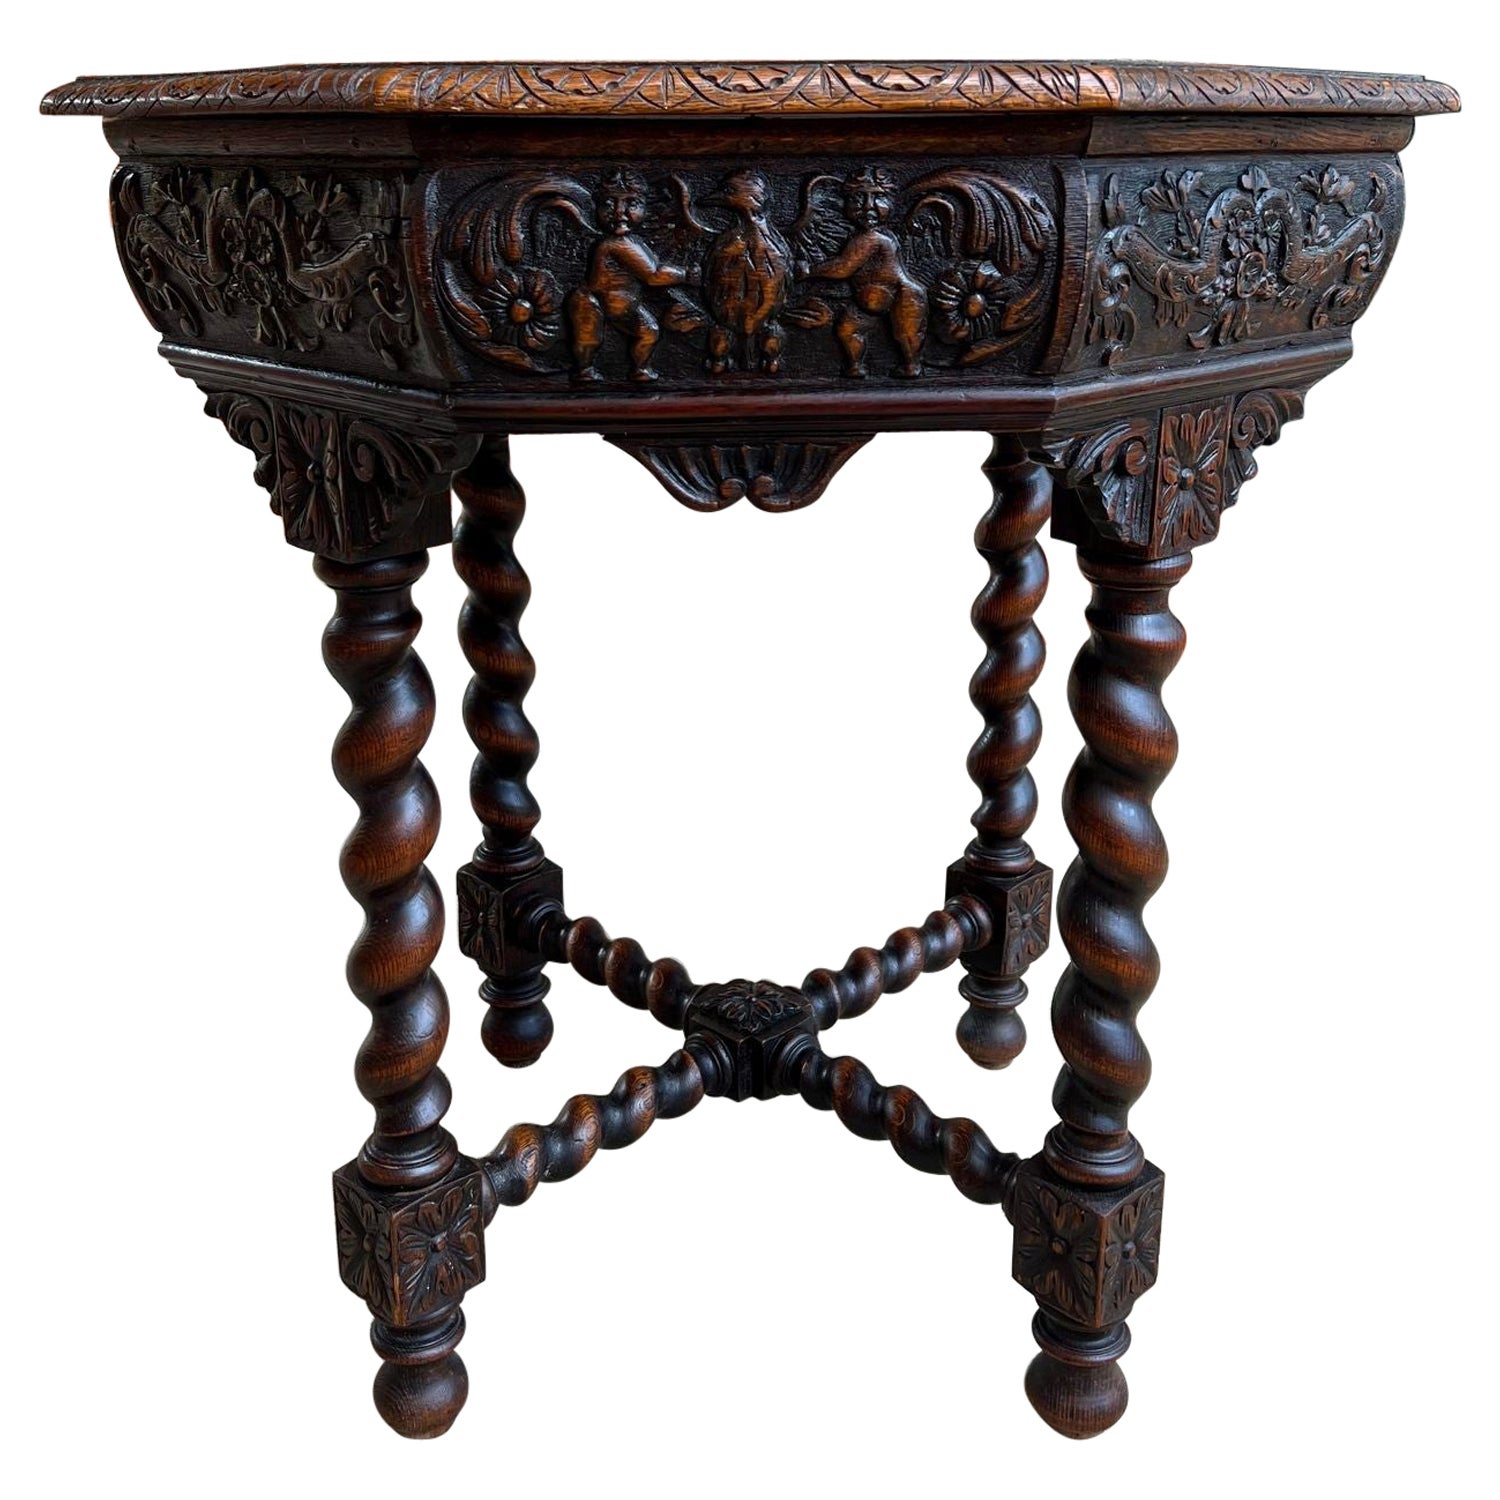 Ancienne table de canapé octogonale française sculptée en chêne à torsion d'orge de style Louis XIII Renaissance